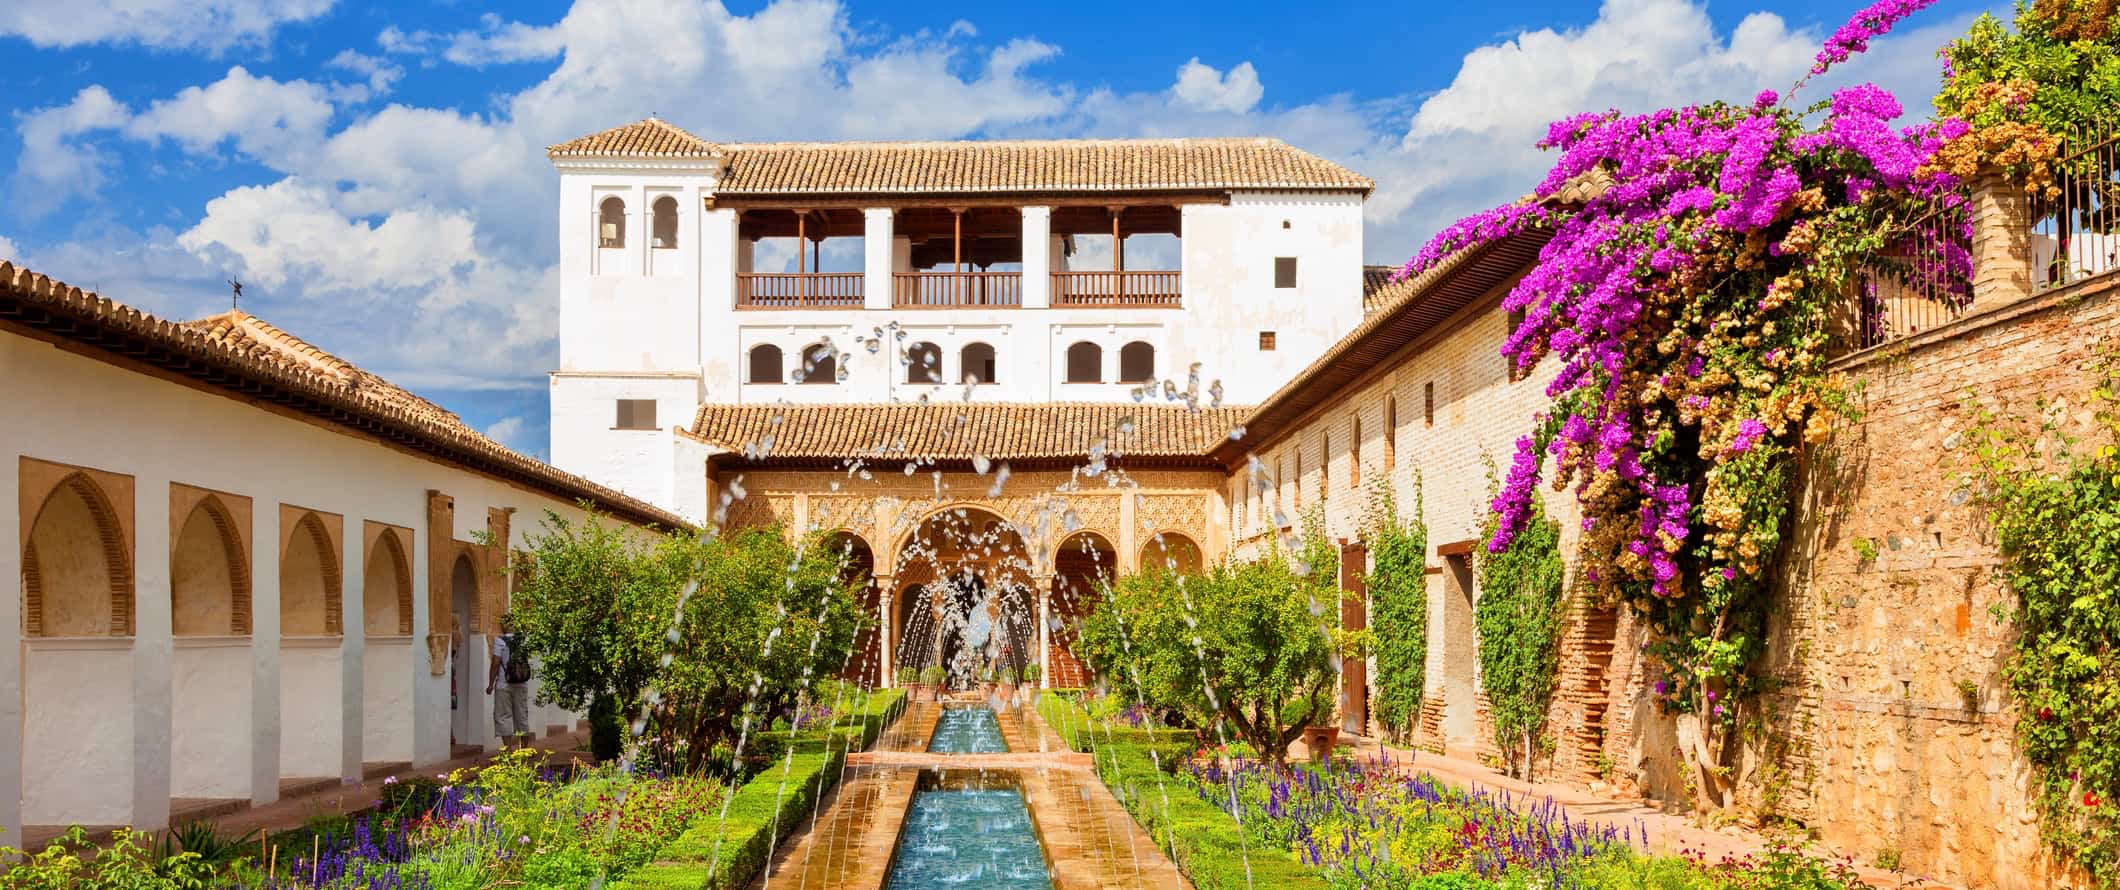 O famoso palácio de Algambra em granada, Espanha, com uma fonte longa e ervas exuberantes